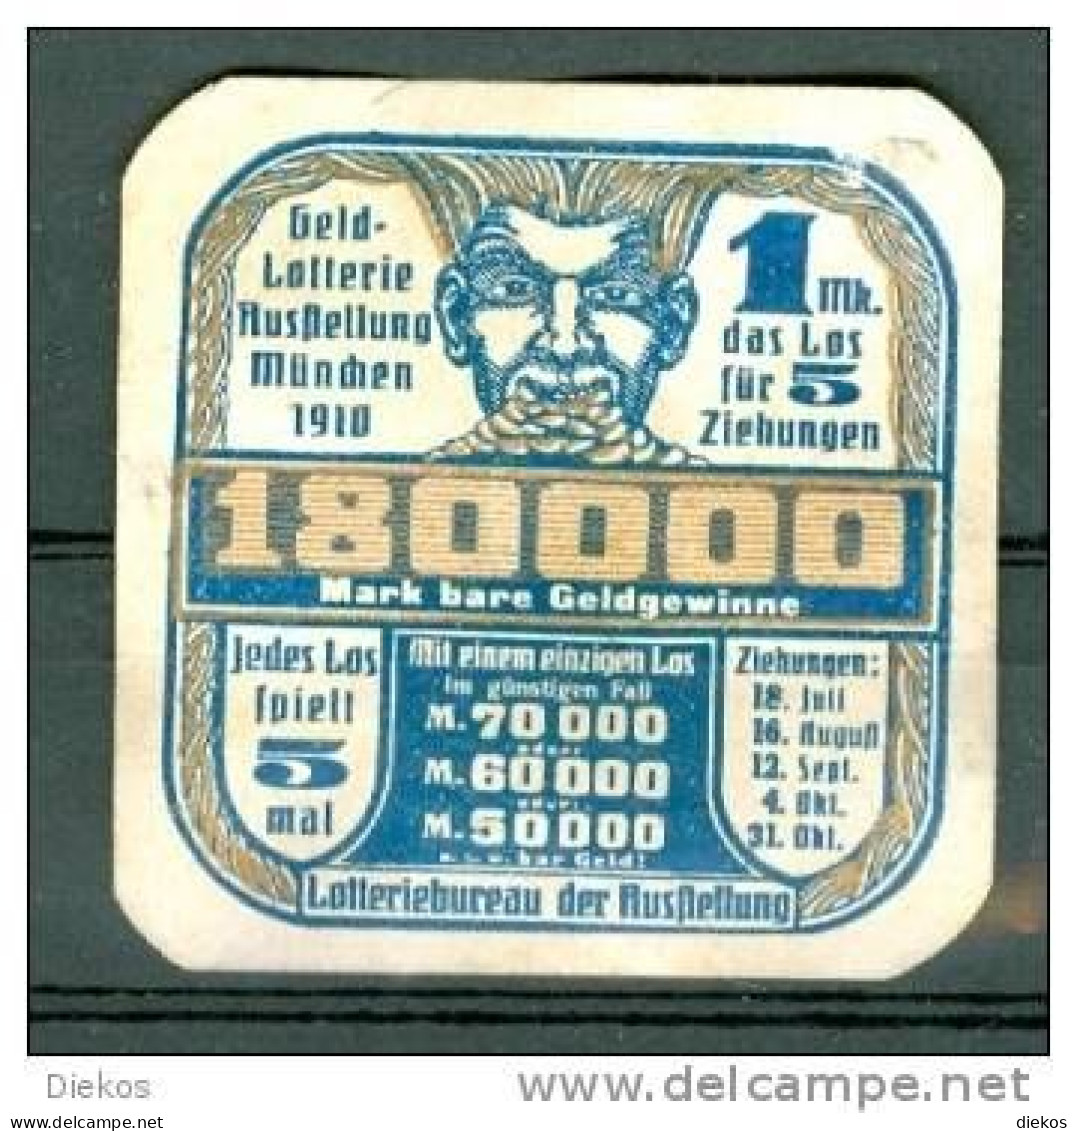 Werbemarke Cinderella Poster Stamp Lotterie München 1910 #640 - Cinderellas